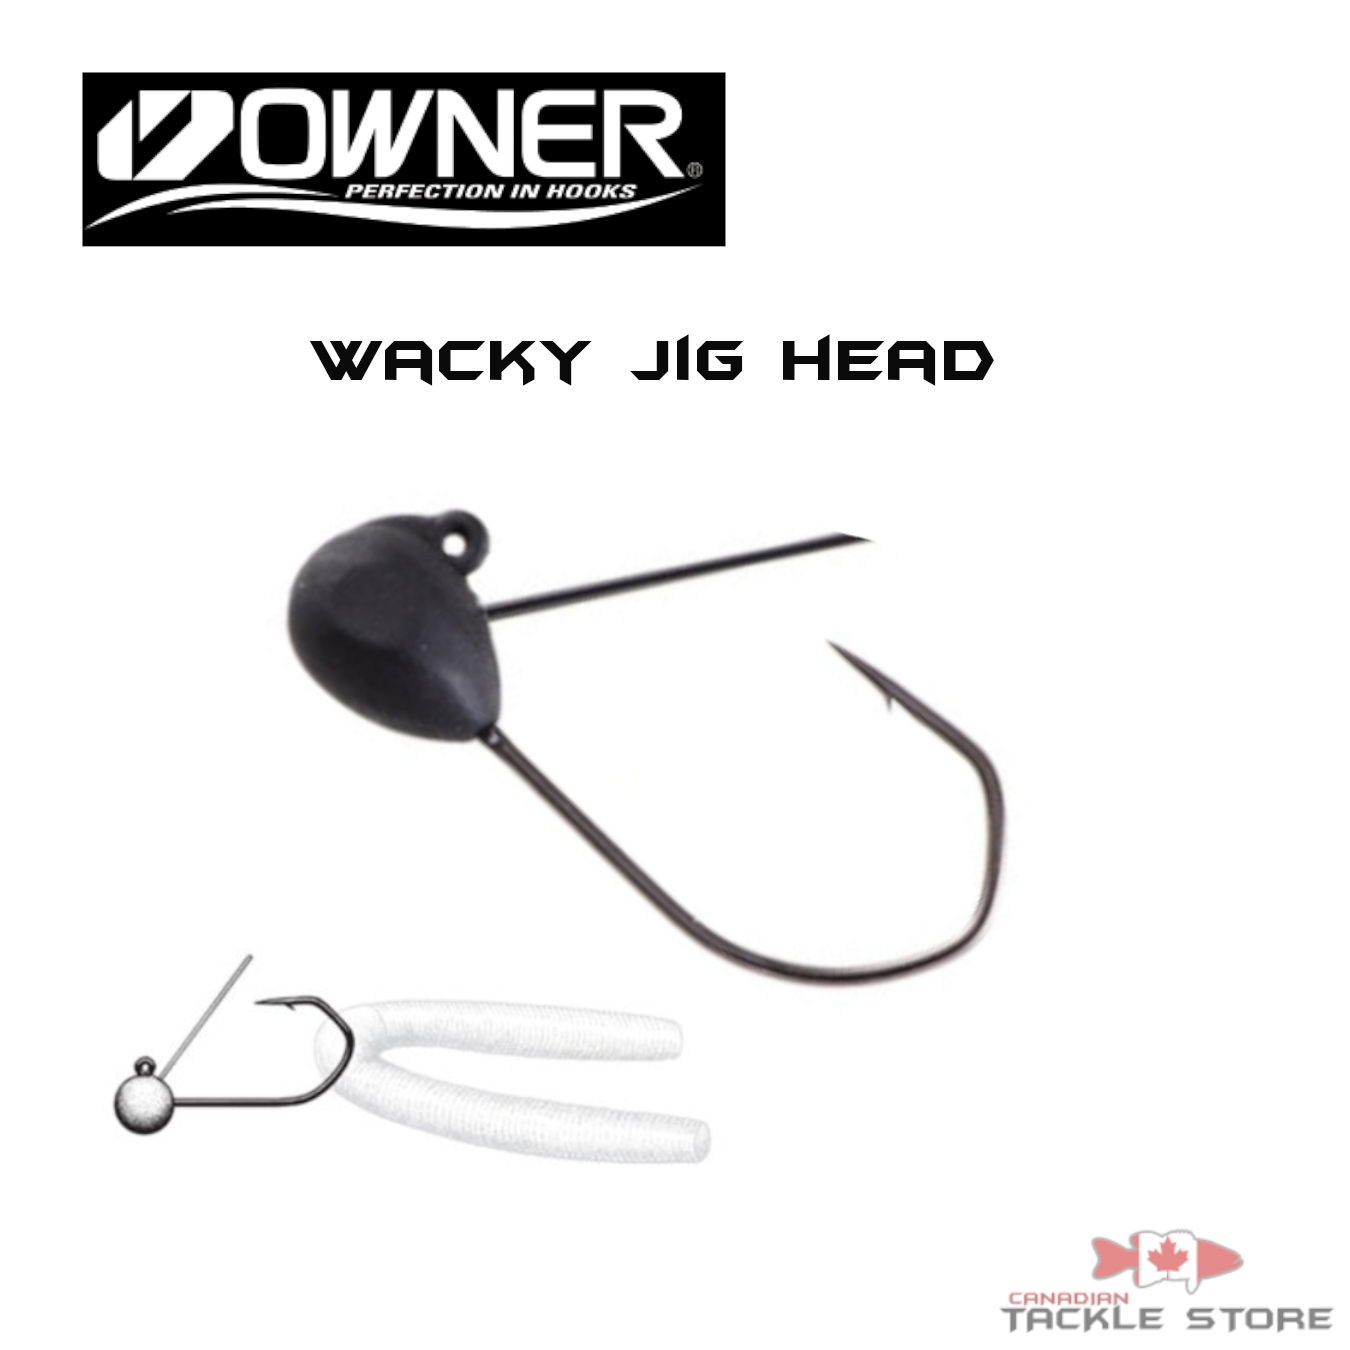 Owner Wacky Jig Head Size 1/0 Hooks - 1/32 oz